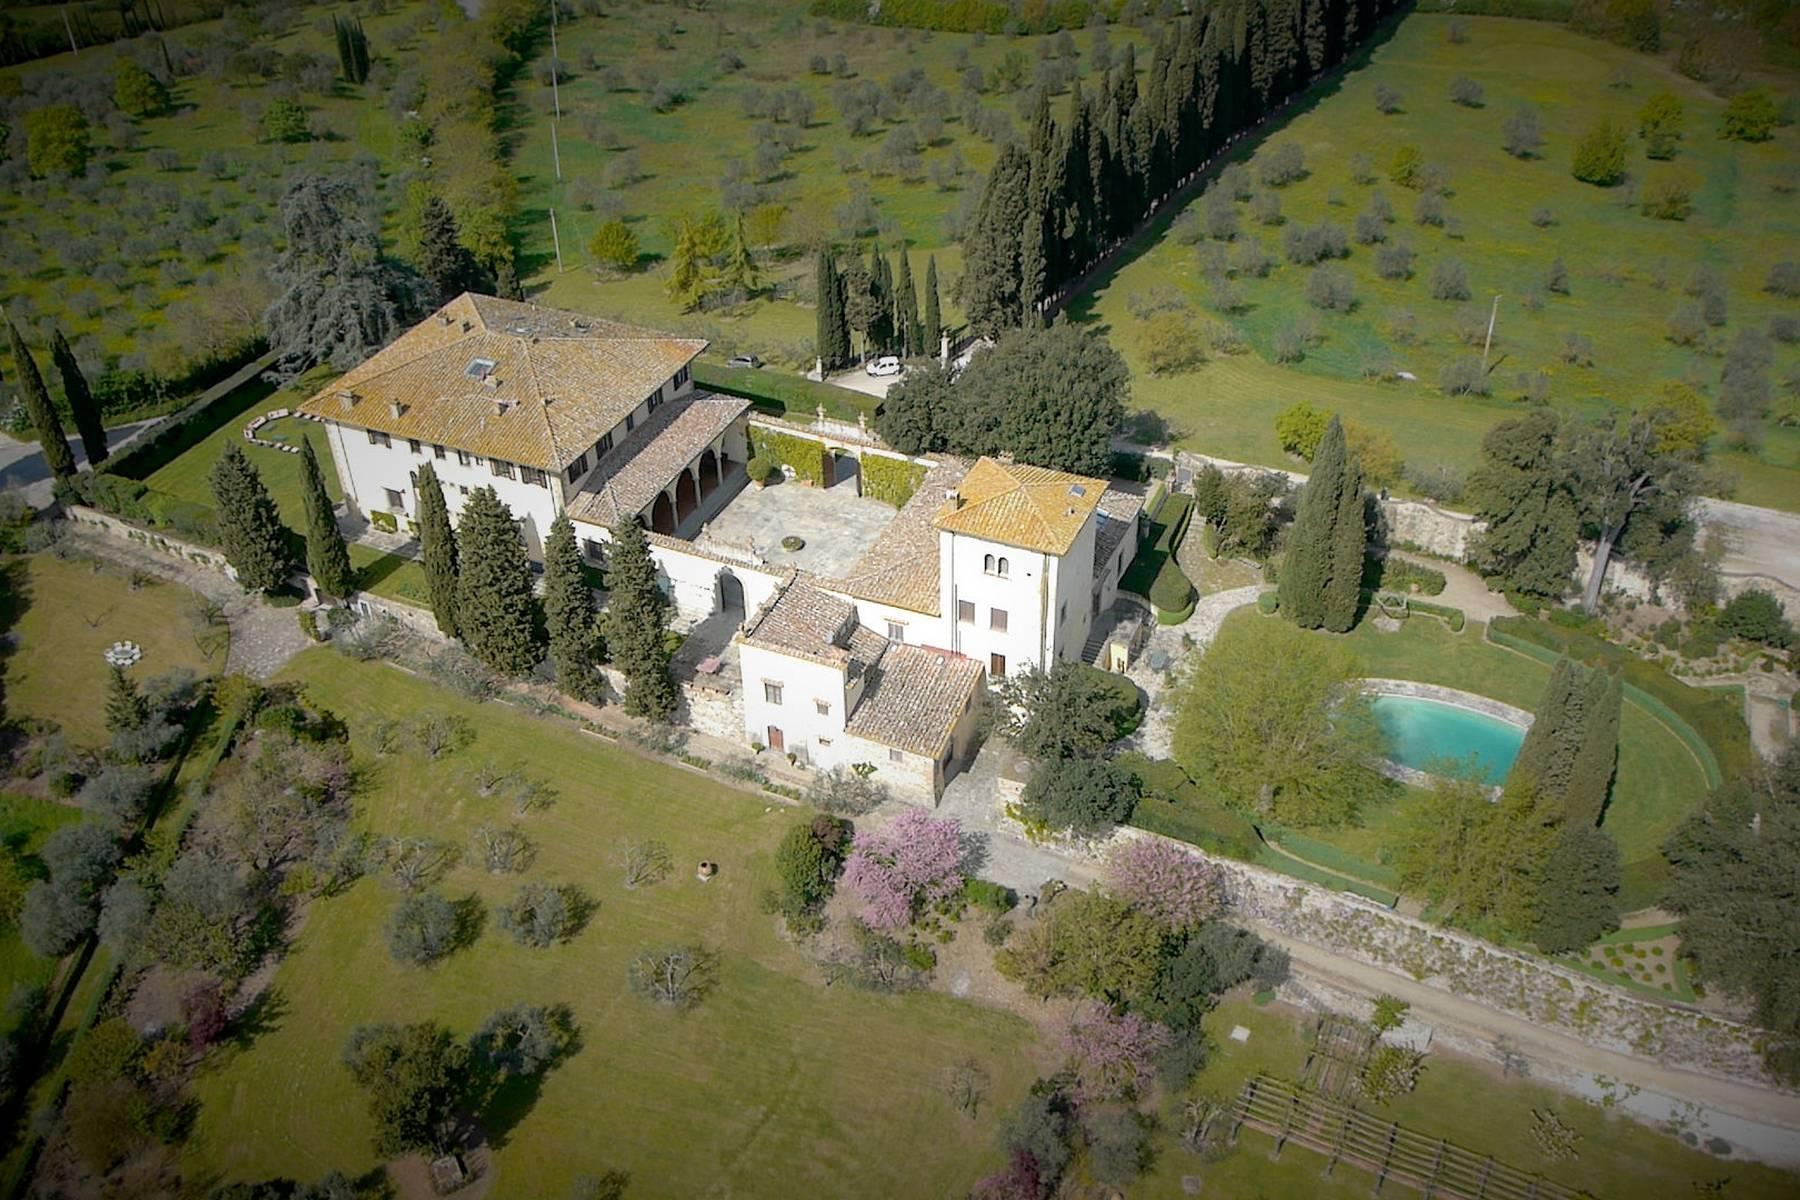 Un'incantevole villa rinascimentale in collina toscana vicino a Firenze - 1